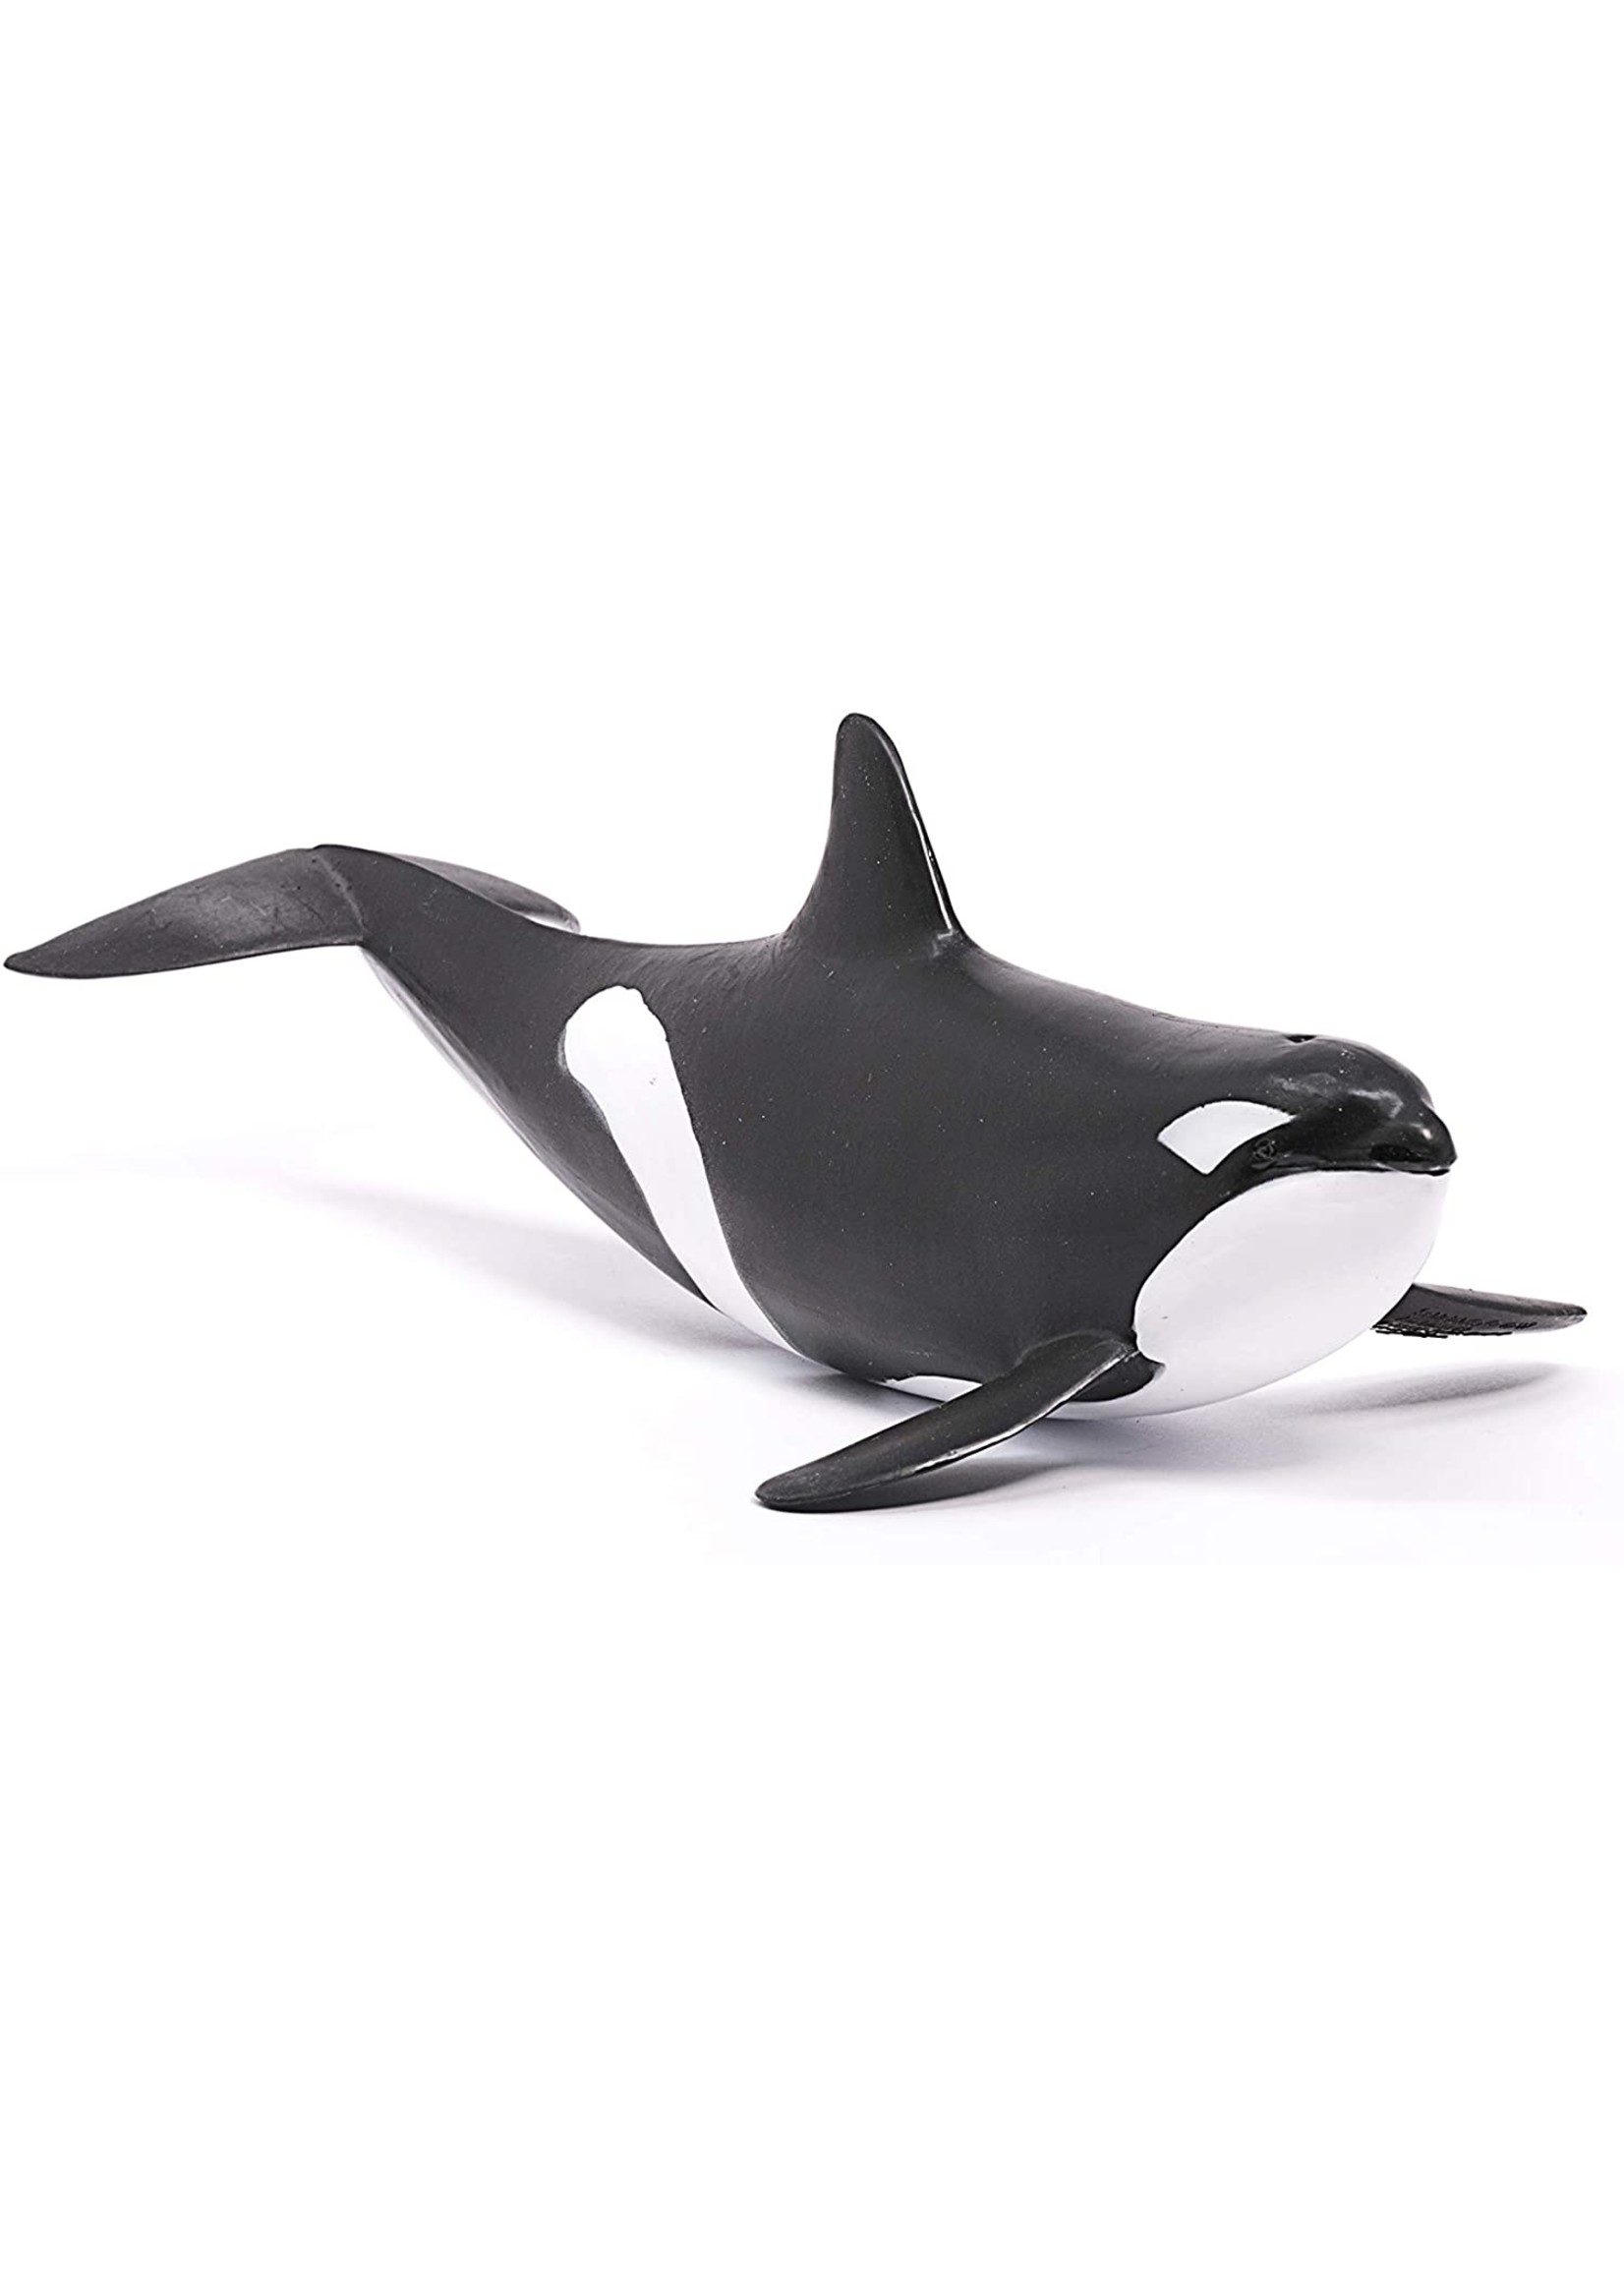 Schleich 14807 - Killer Whale